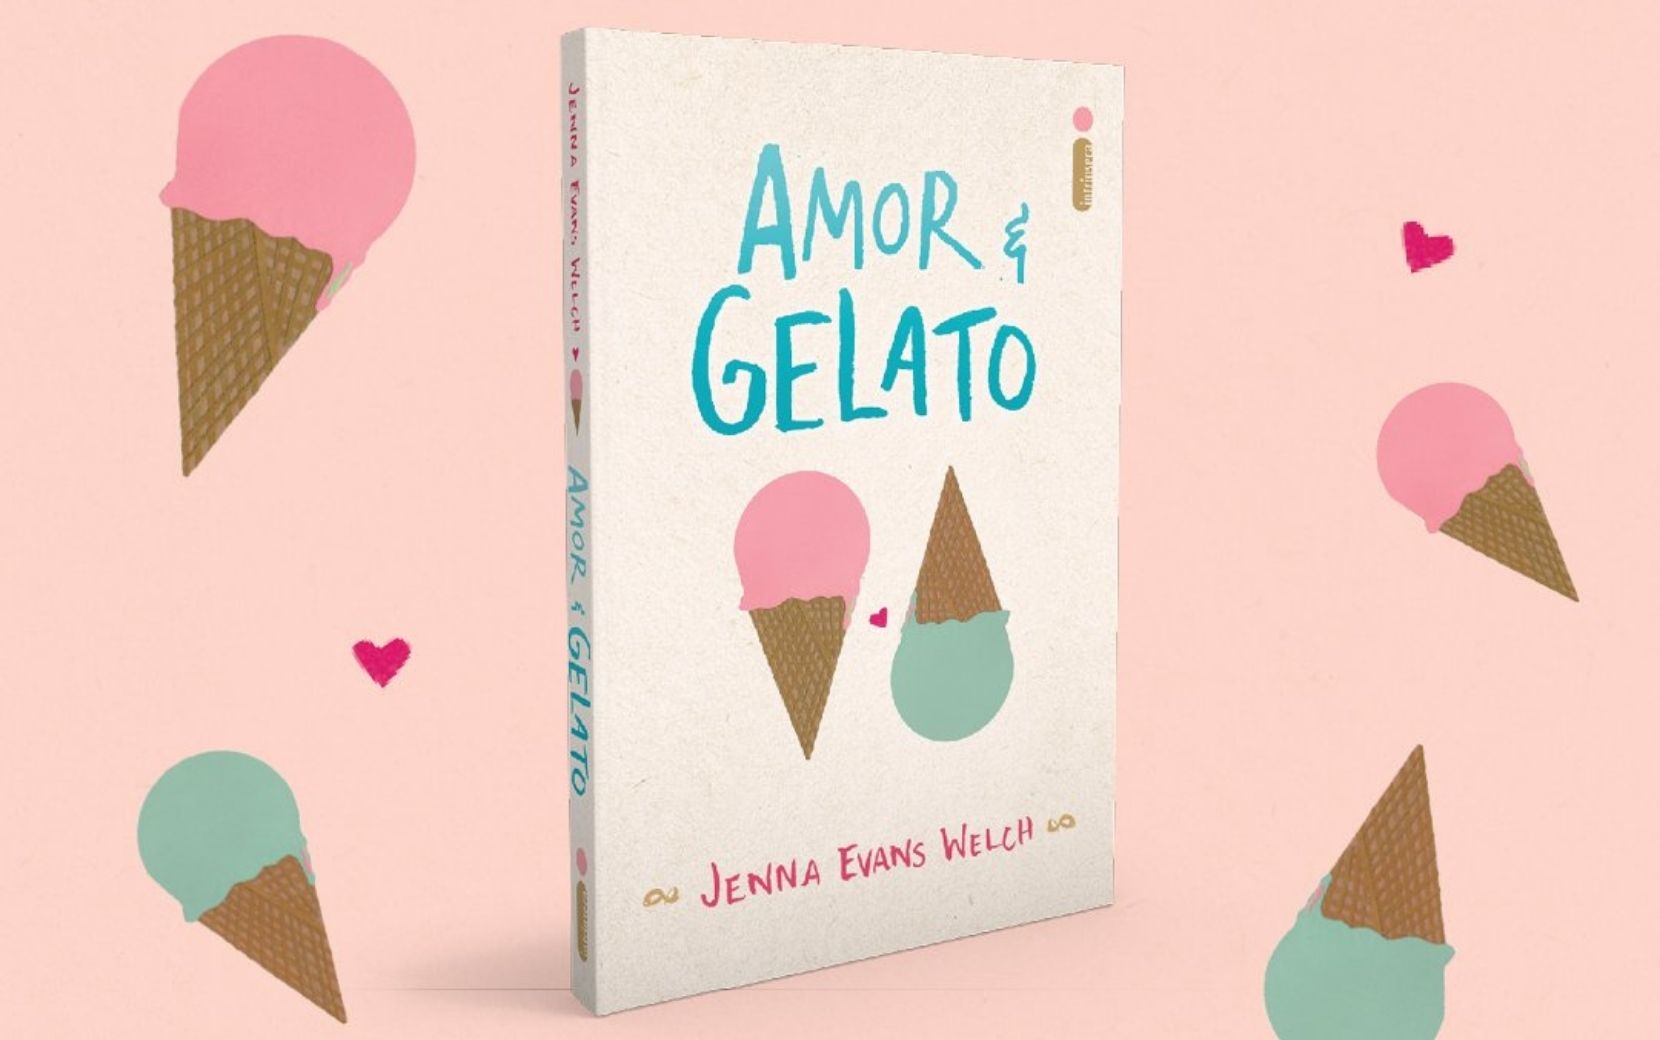 Exclusiva: Jenna Evans Welch, autora de "Amor & Gelato", fala sobre seu novo lançamento e dá conselho amoroso!